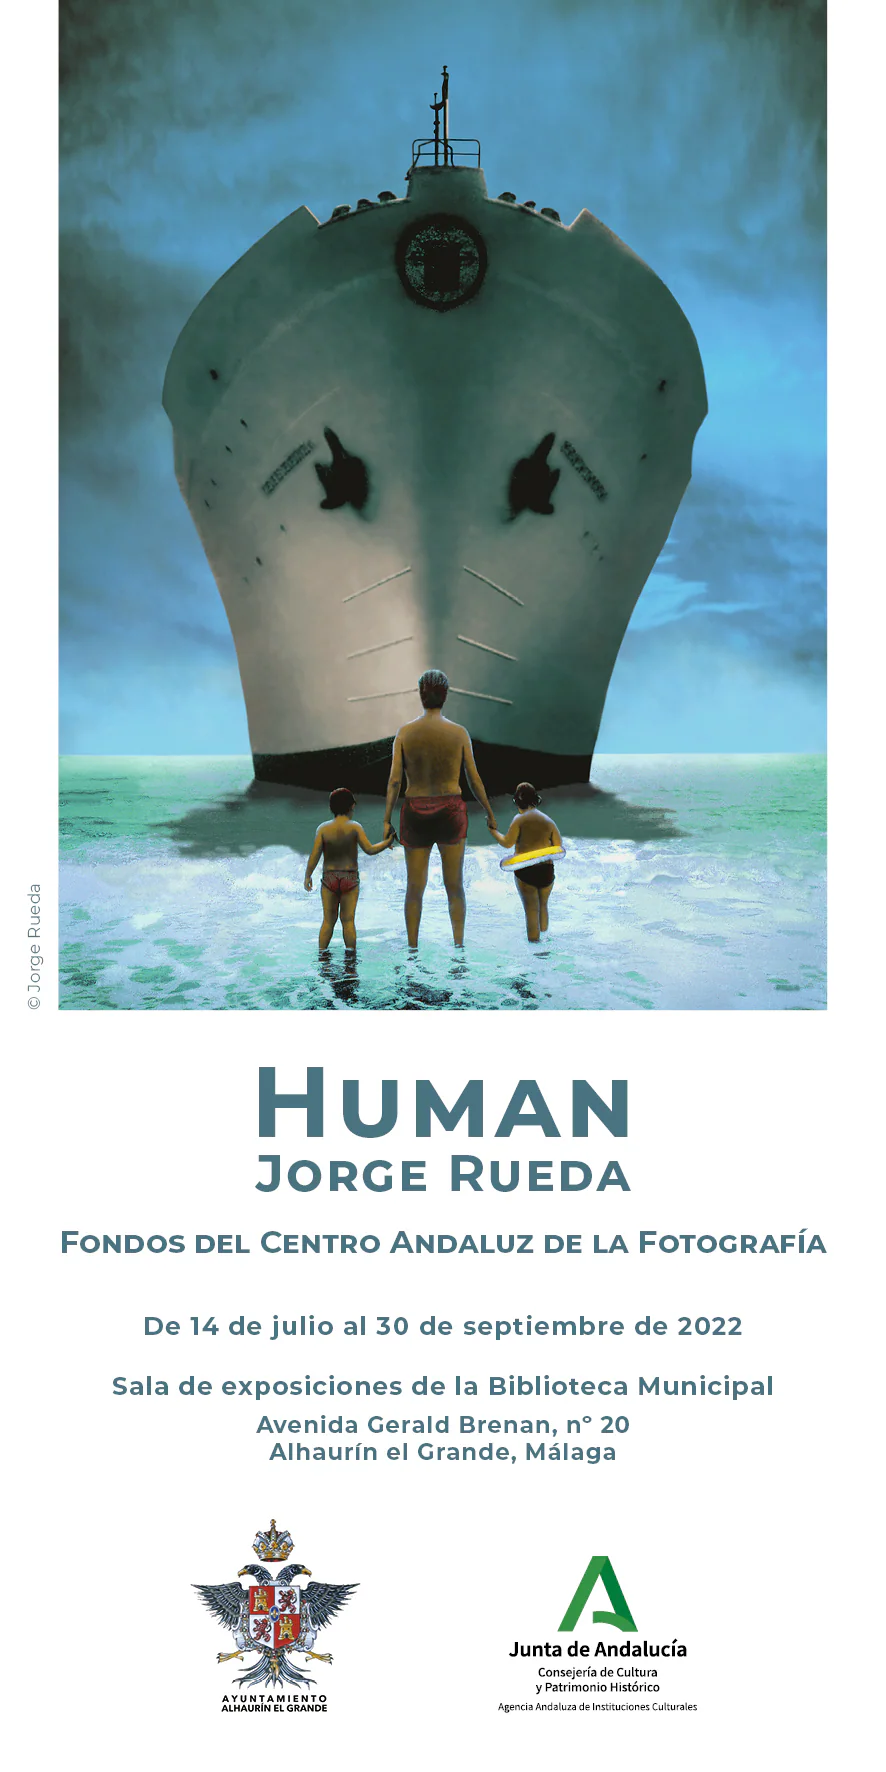 El CAF exhibe la muestra 'Human' de Jorge Rueda en Alhaurín El Grande